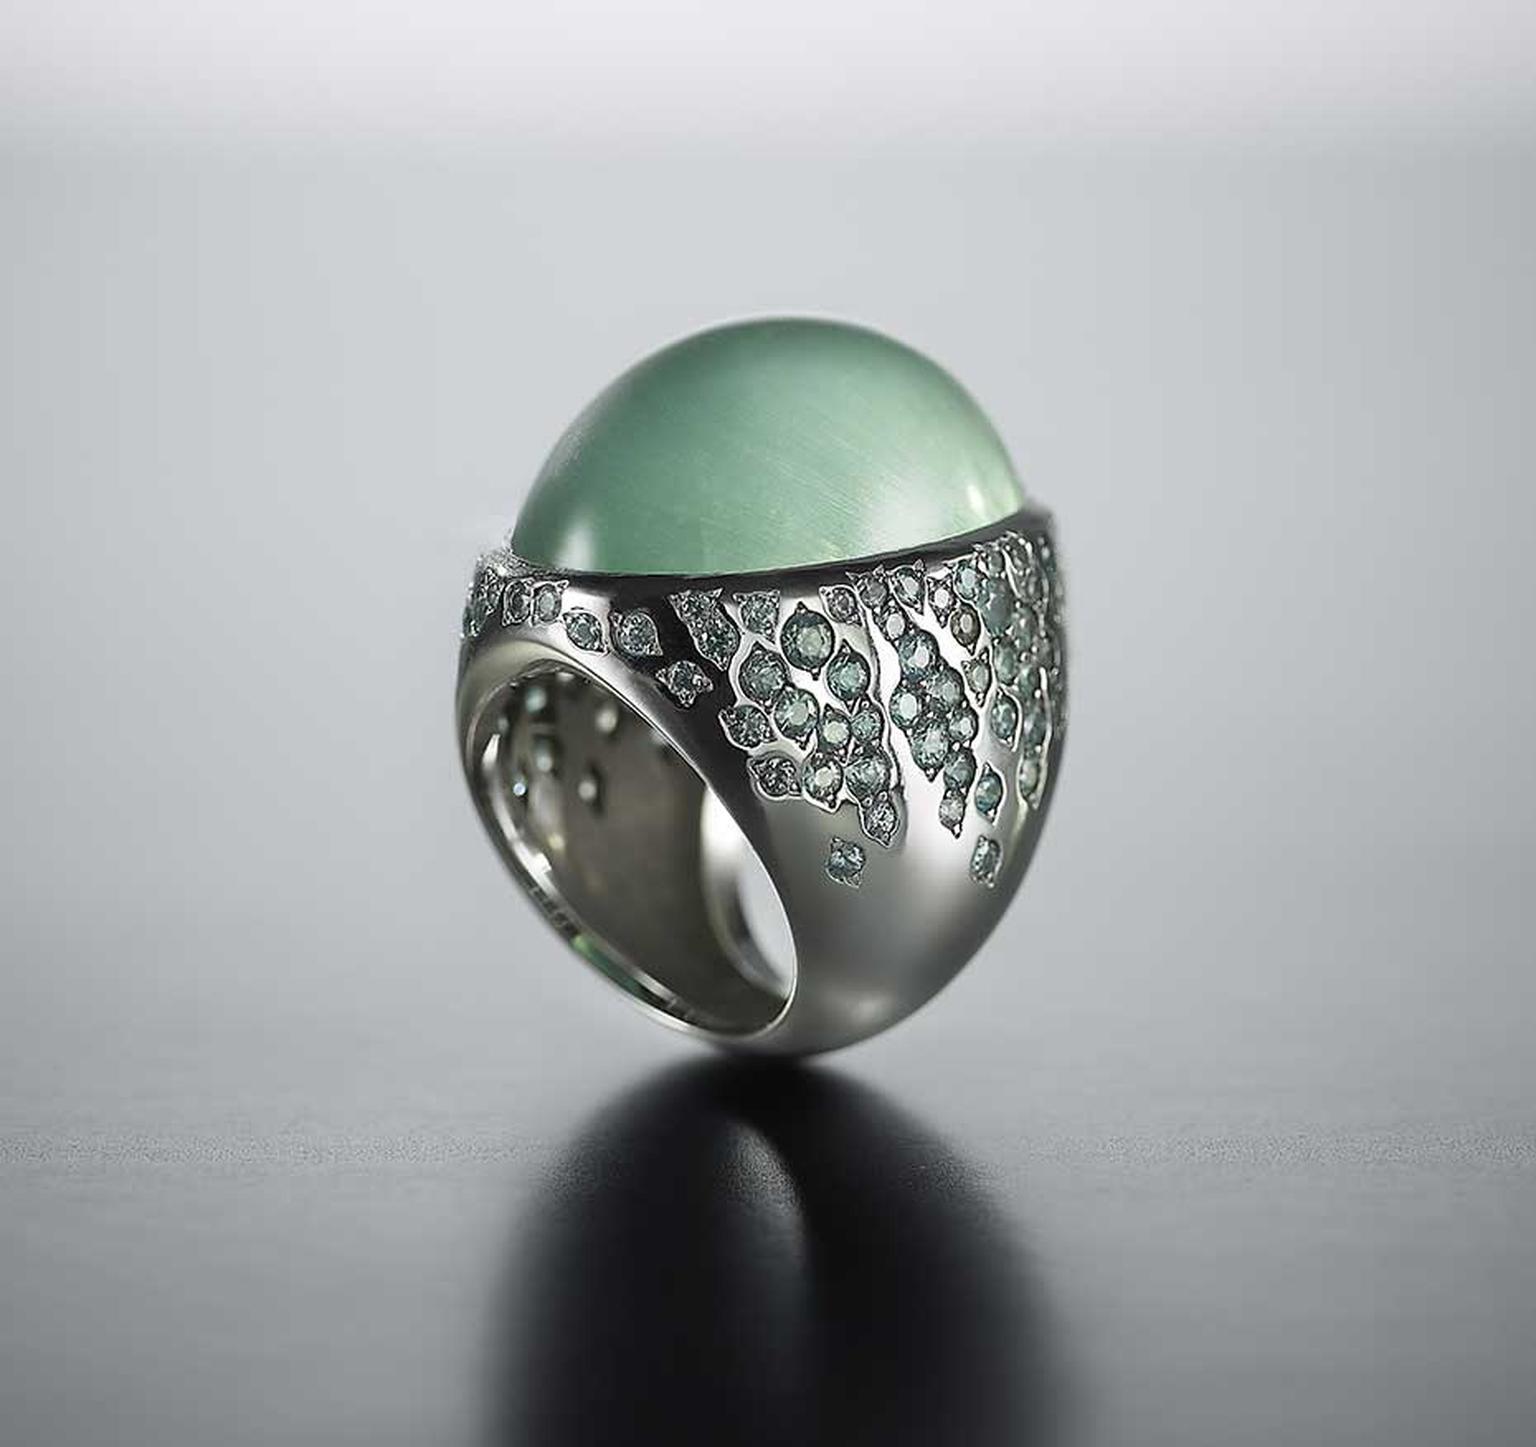 Walid Akkad jewellery: minimalist settings let the stones seduce with their inner magic